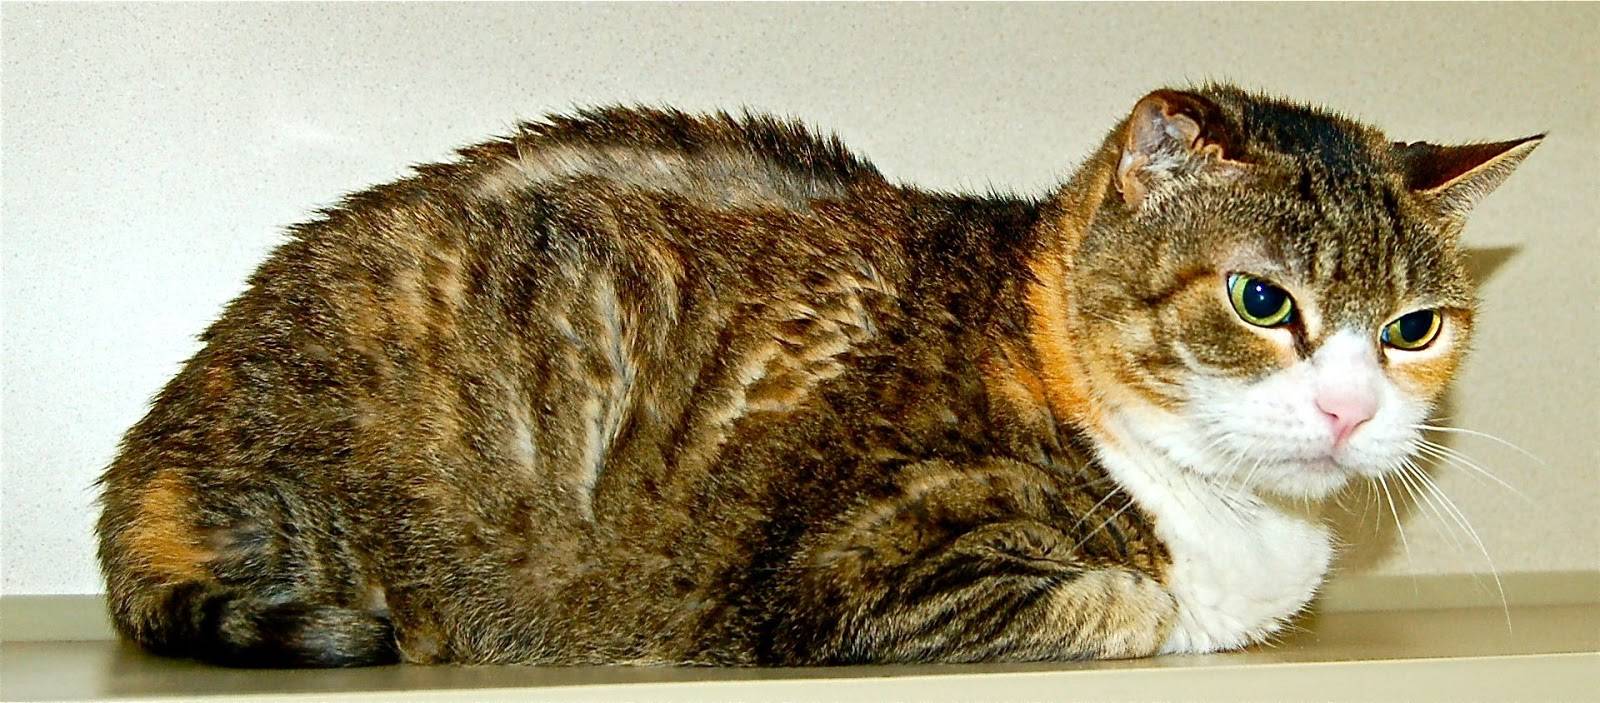 Гипертиреоз у кошек: причины, симптомы, лечение
гипертиреоз у кошек: причины, симптомы, лечение